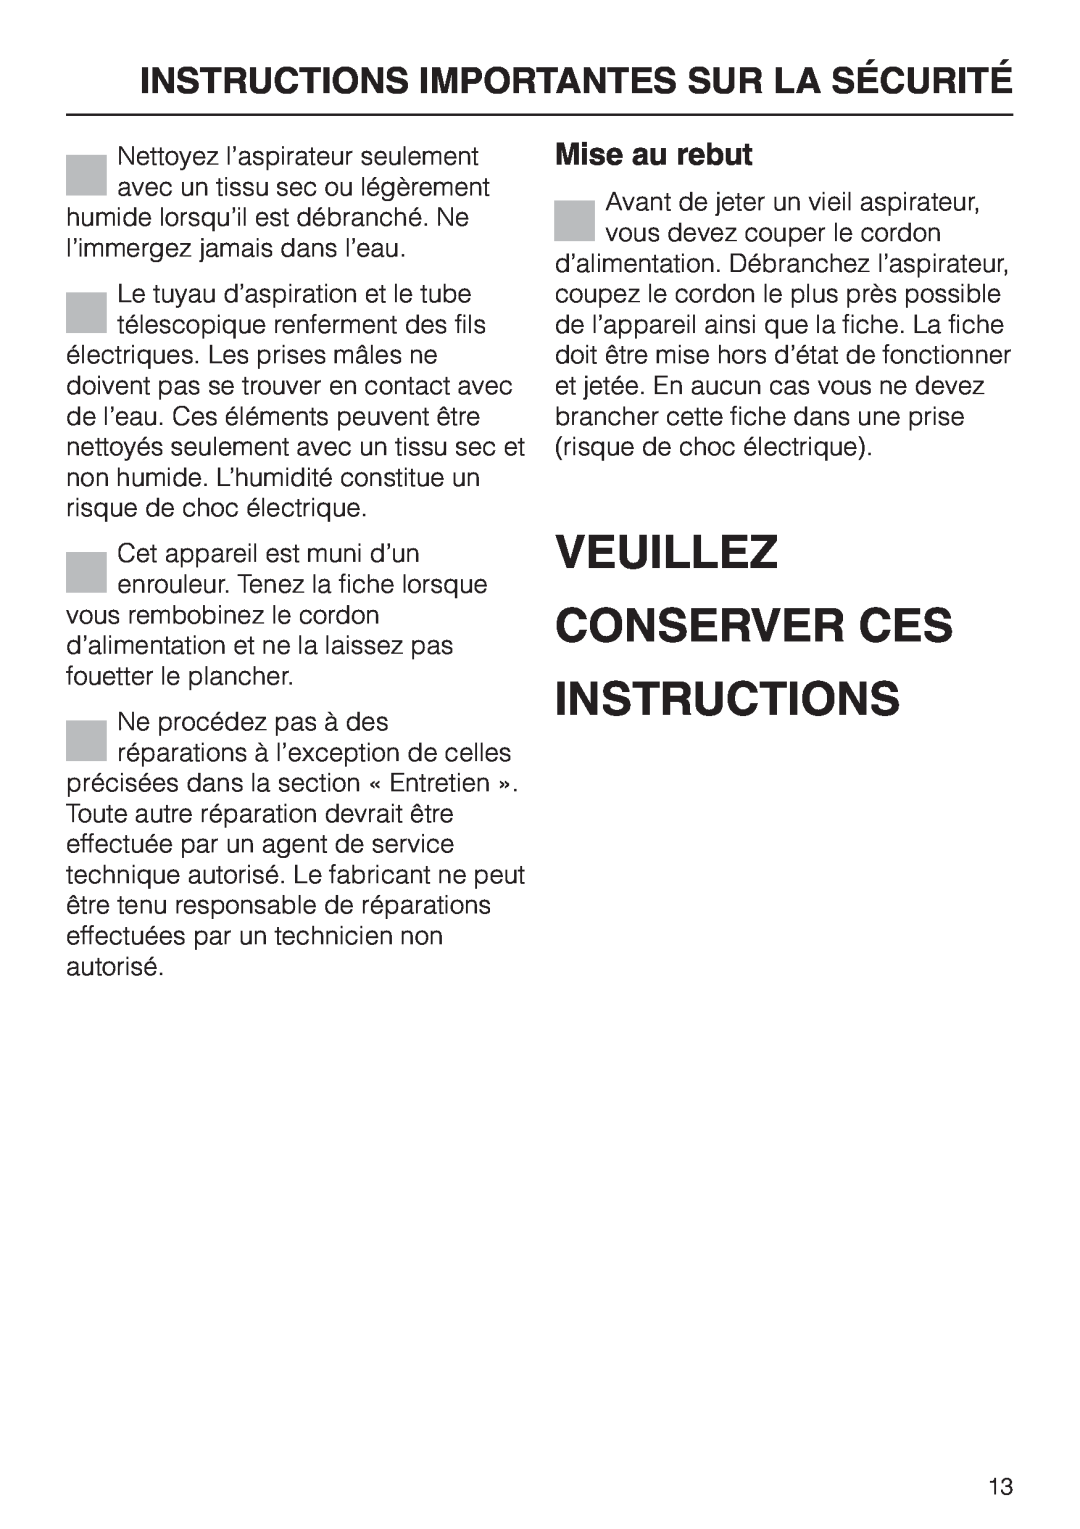 Miele S 658 manual Veuillez Conserver Ces Instructions, Mise au rebut, Instructions Importantes Sur La Sécurité 